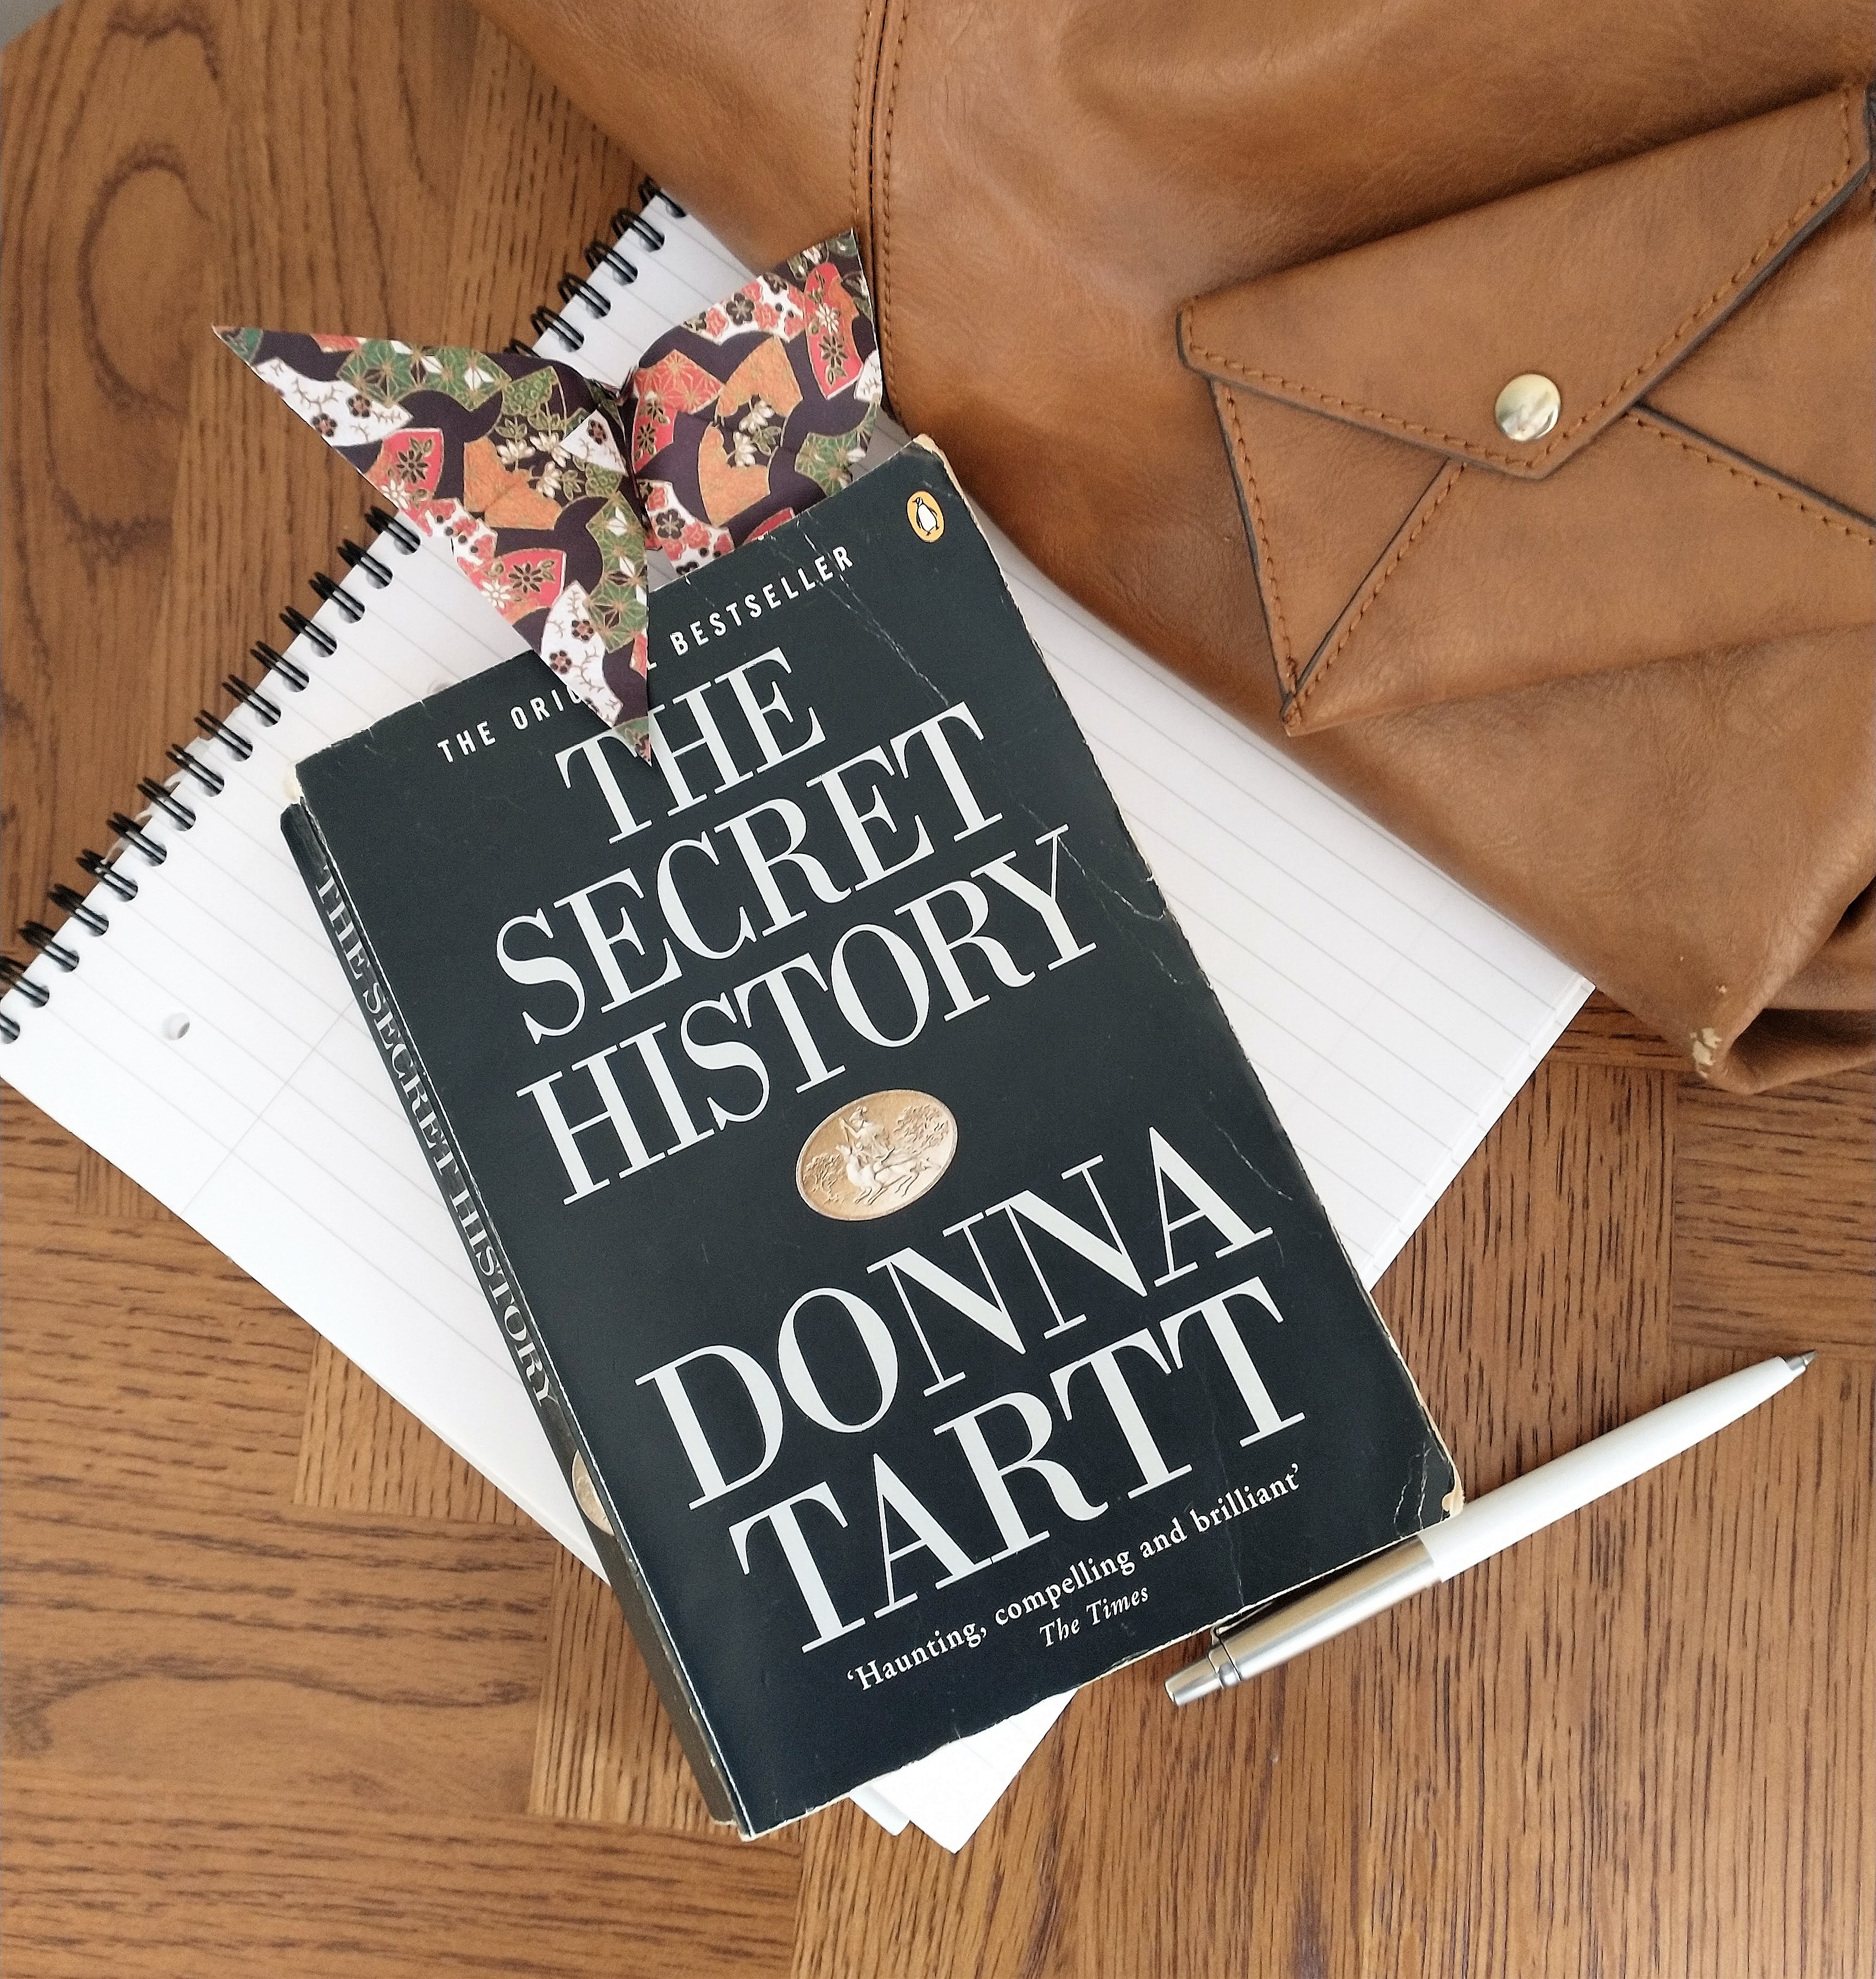 donna tartt  Donna tartt, The secret history, Donna